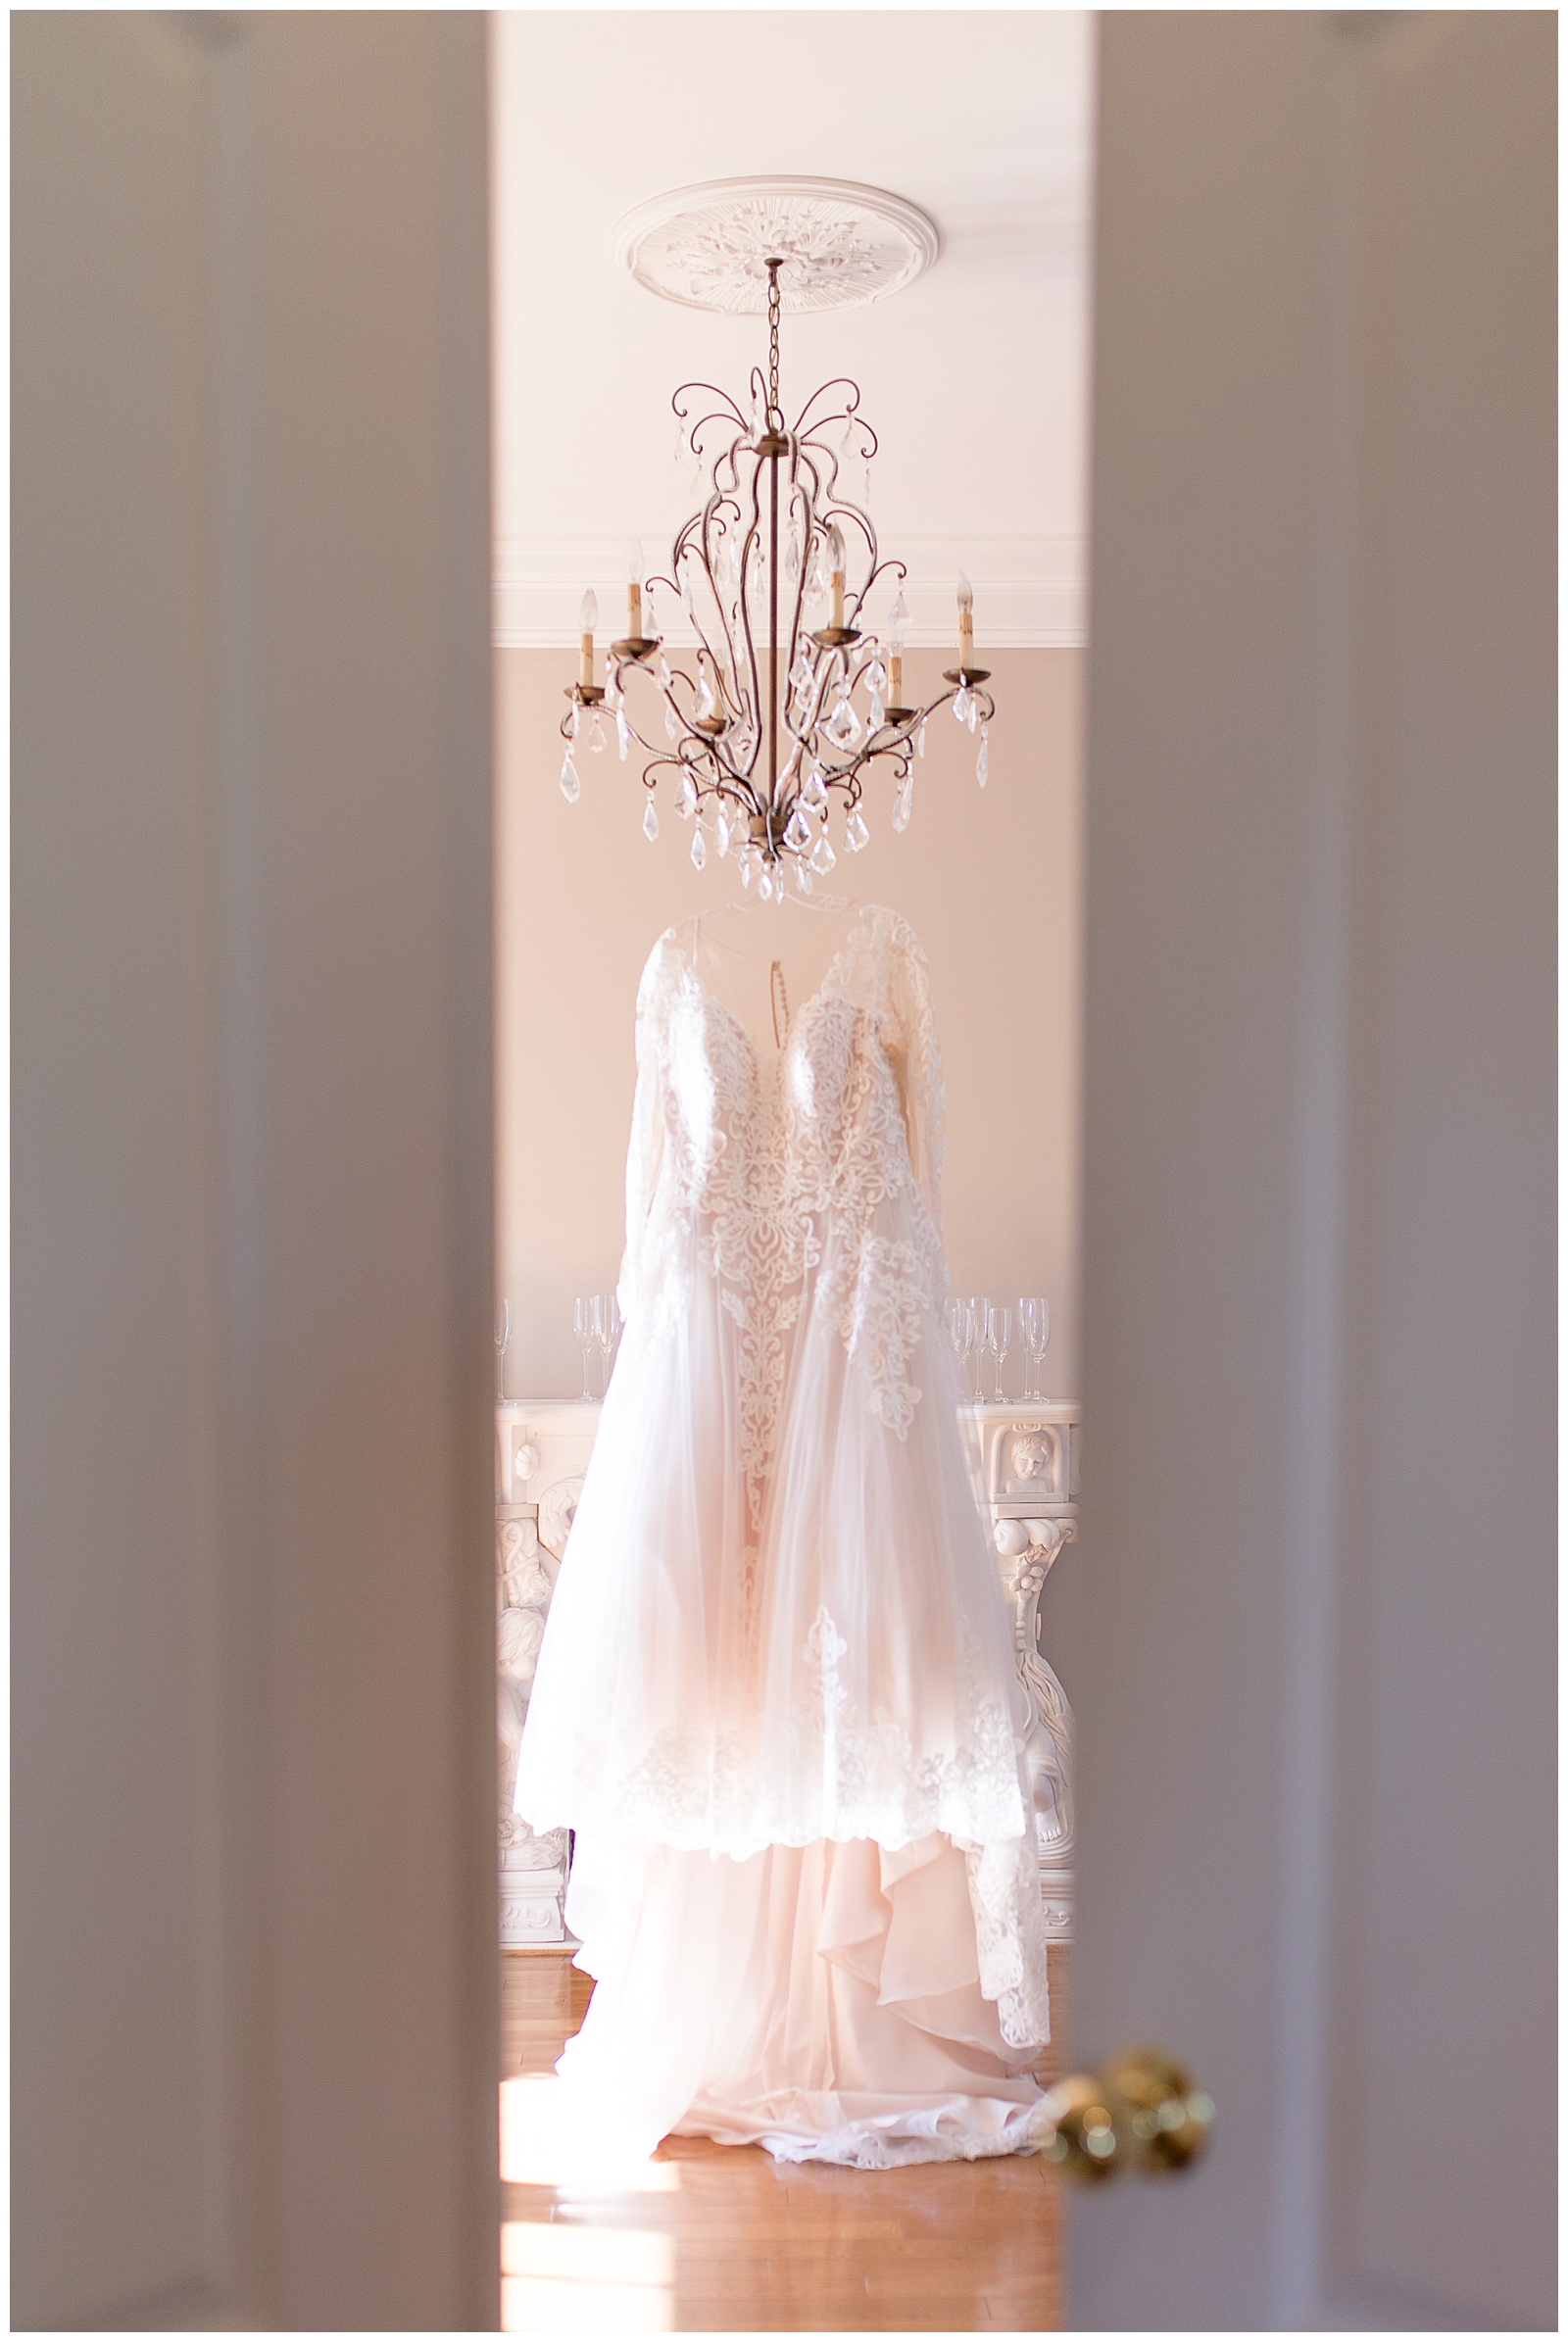 wedding dress hanging off chandelier with camera peeking through doors